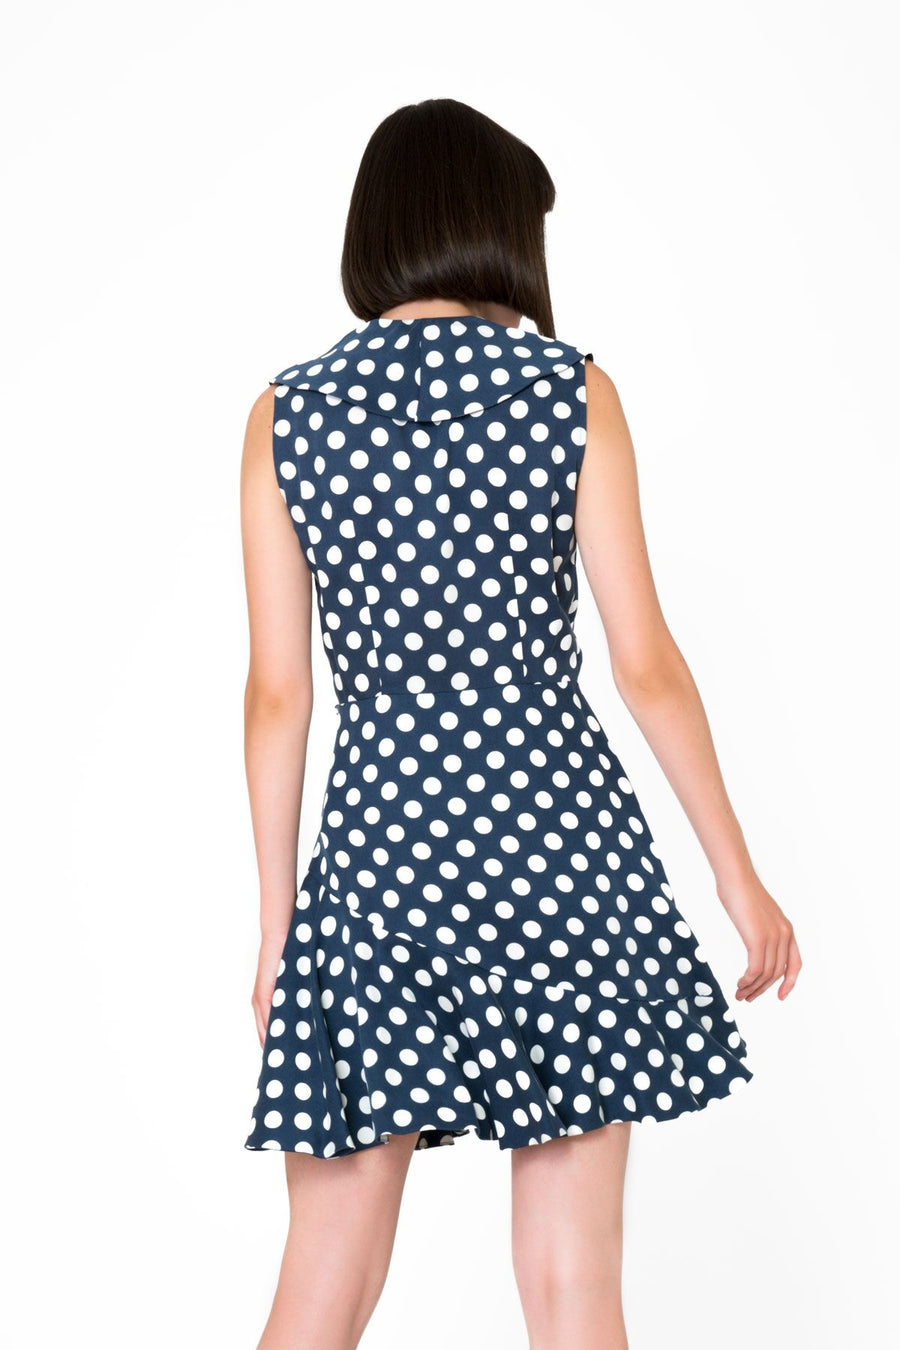 Polka Dot Patterned Navy Blue Mini Dress | Porterist